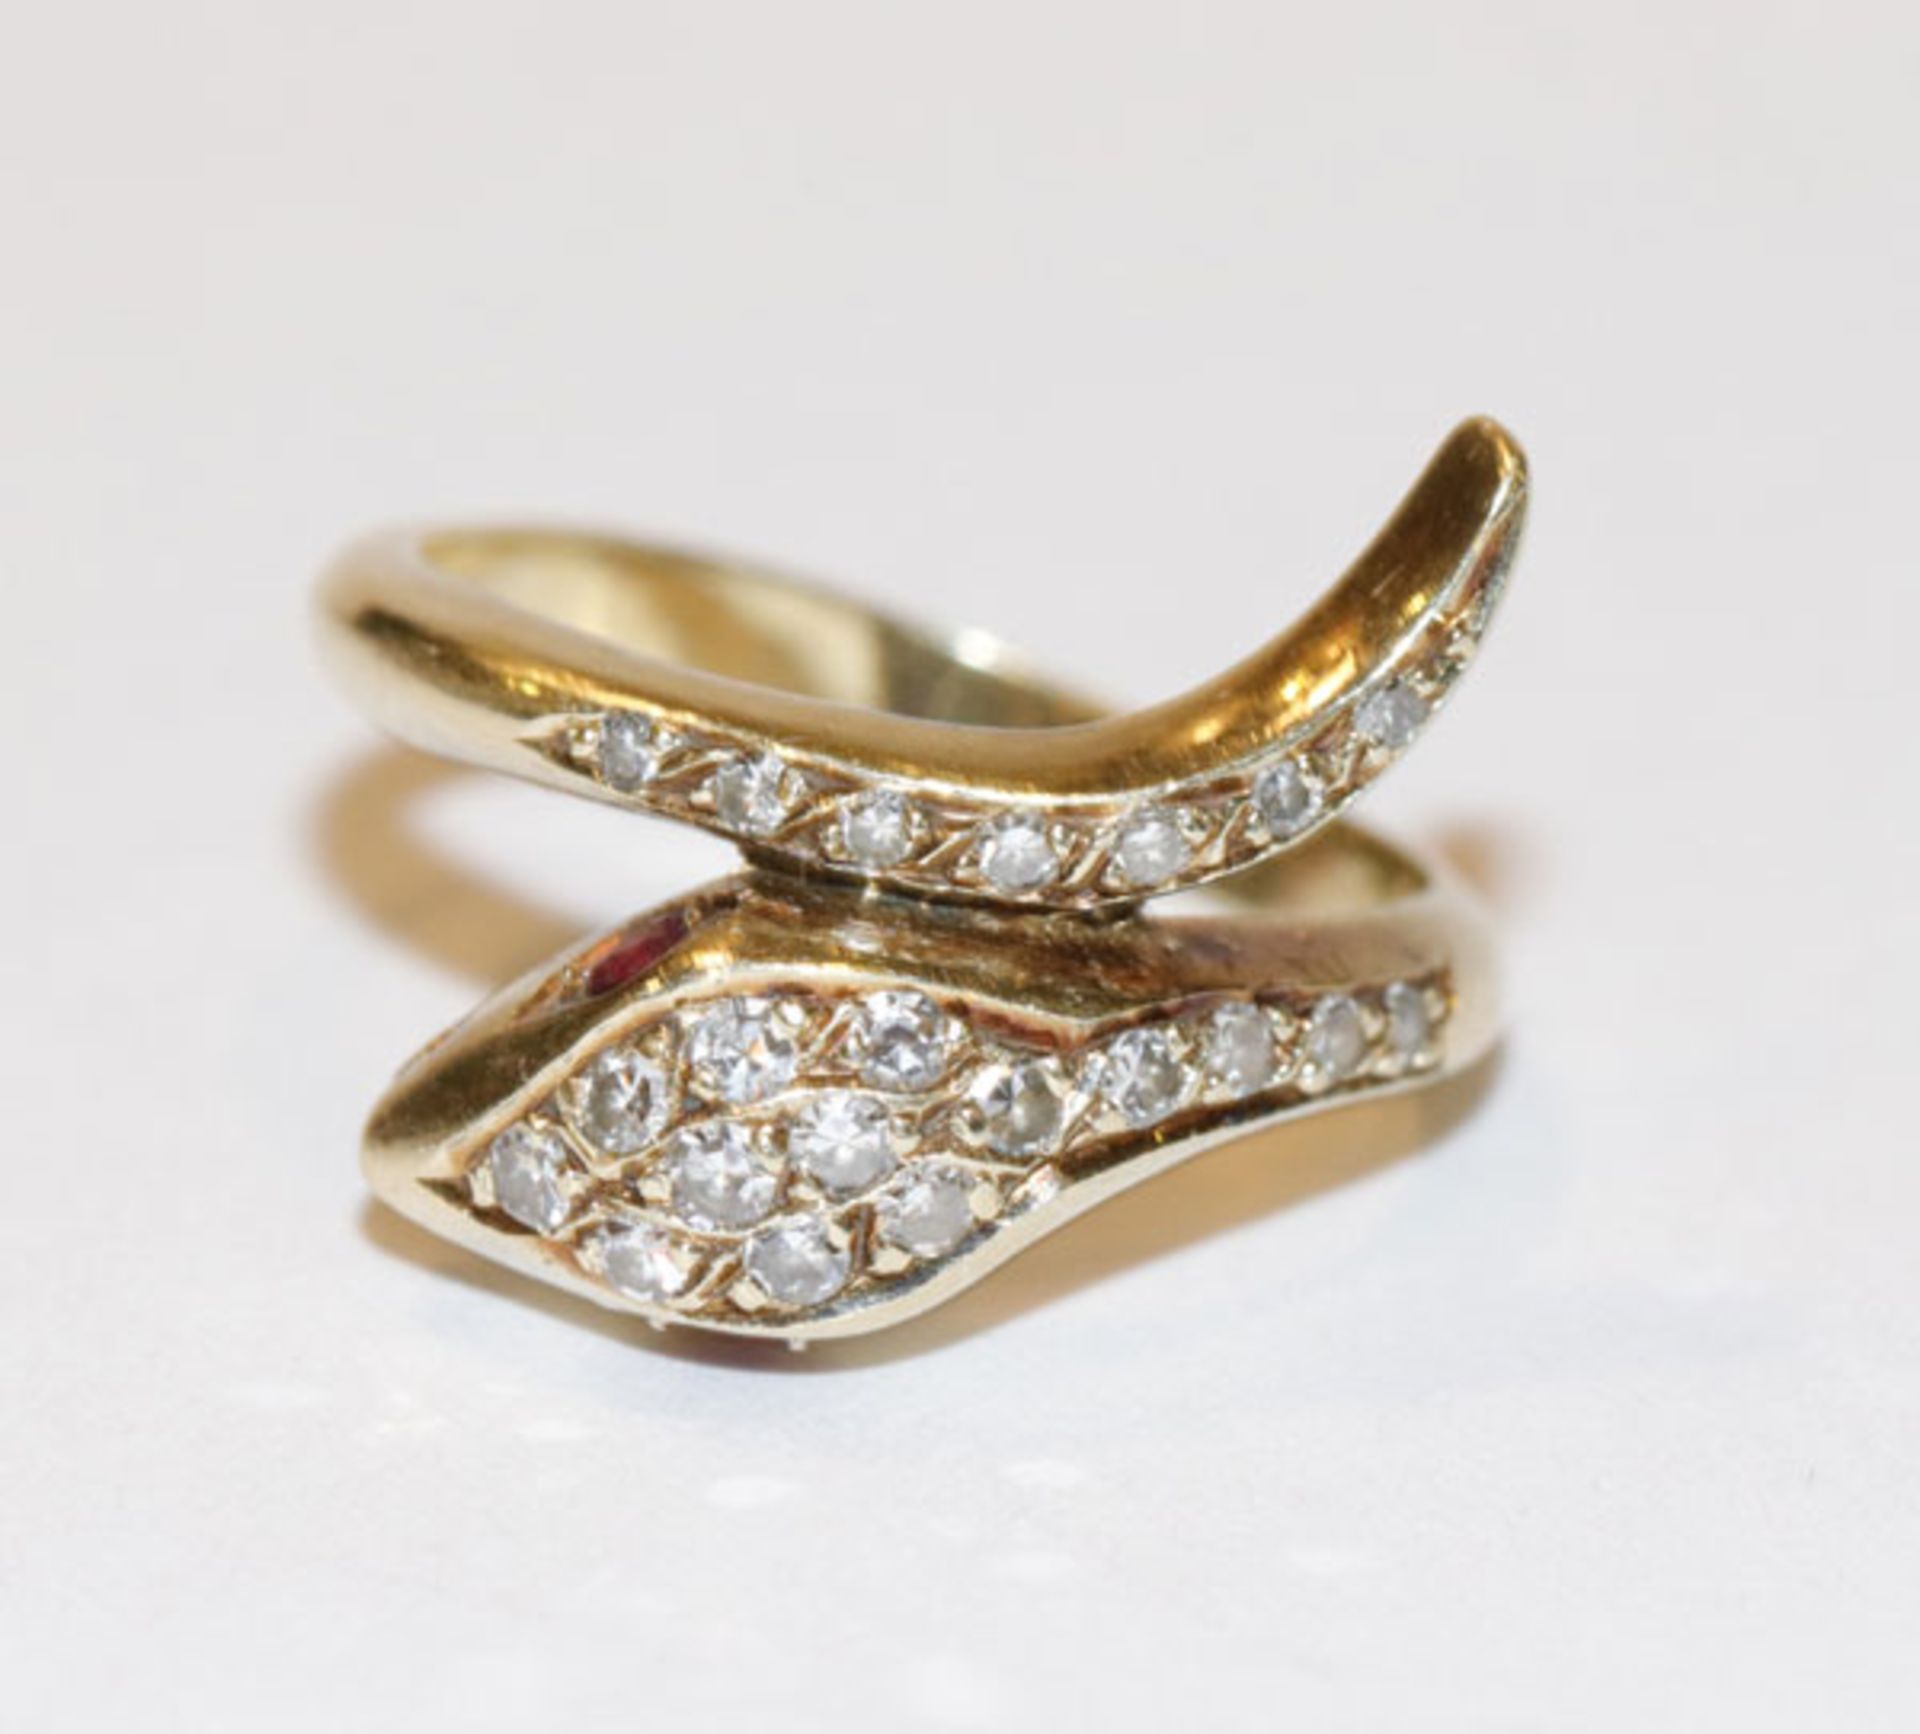 14 k Gelbgold Ring in Schlangenform mit Diamanten und 2 Rubinaugen, Gr. 52, 3,9 gr.